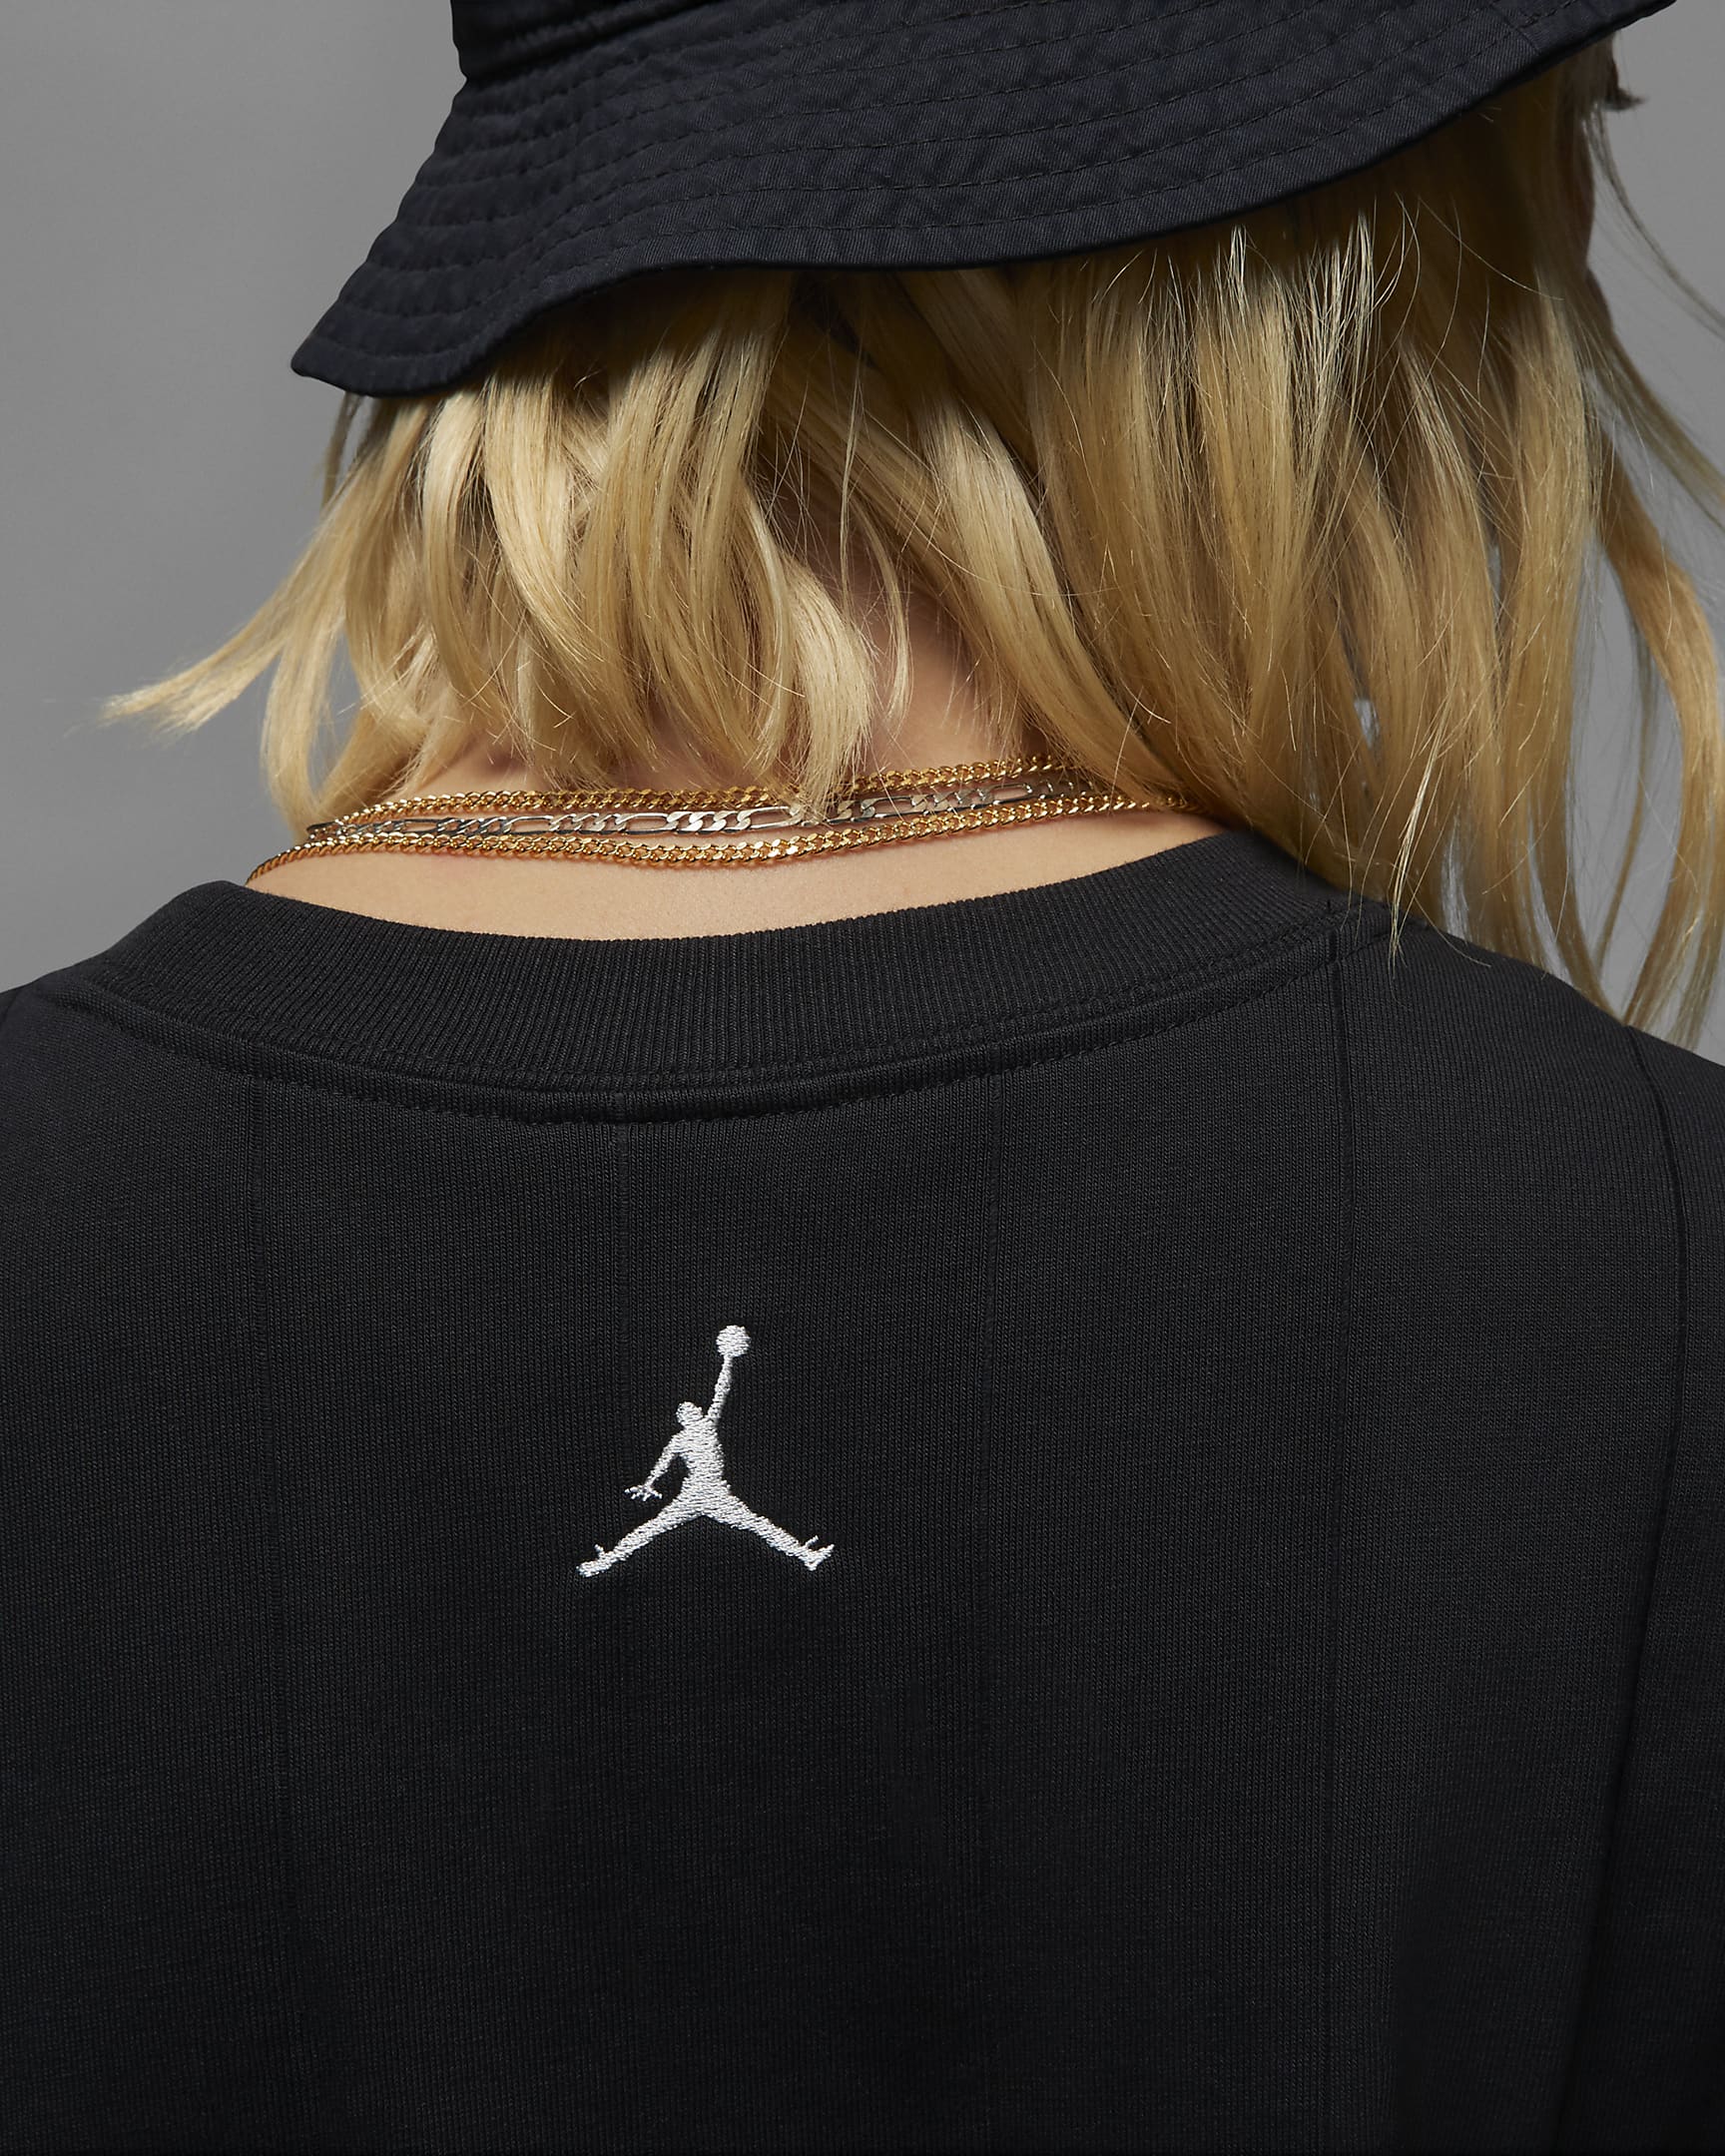 Jordan Femme Women's Dress. Nike CH